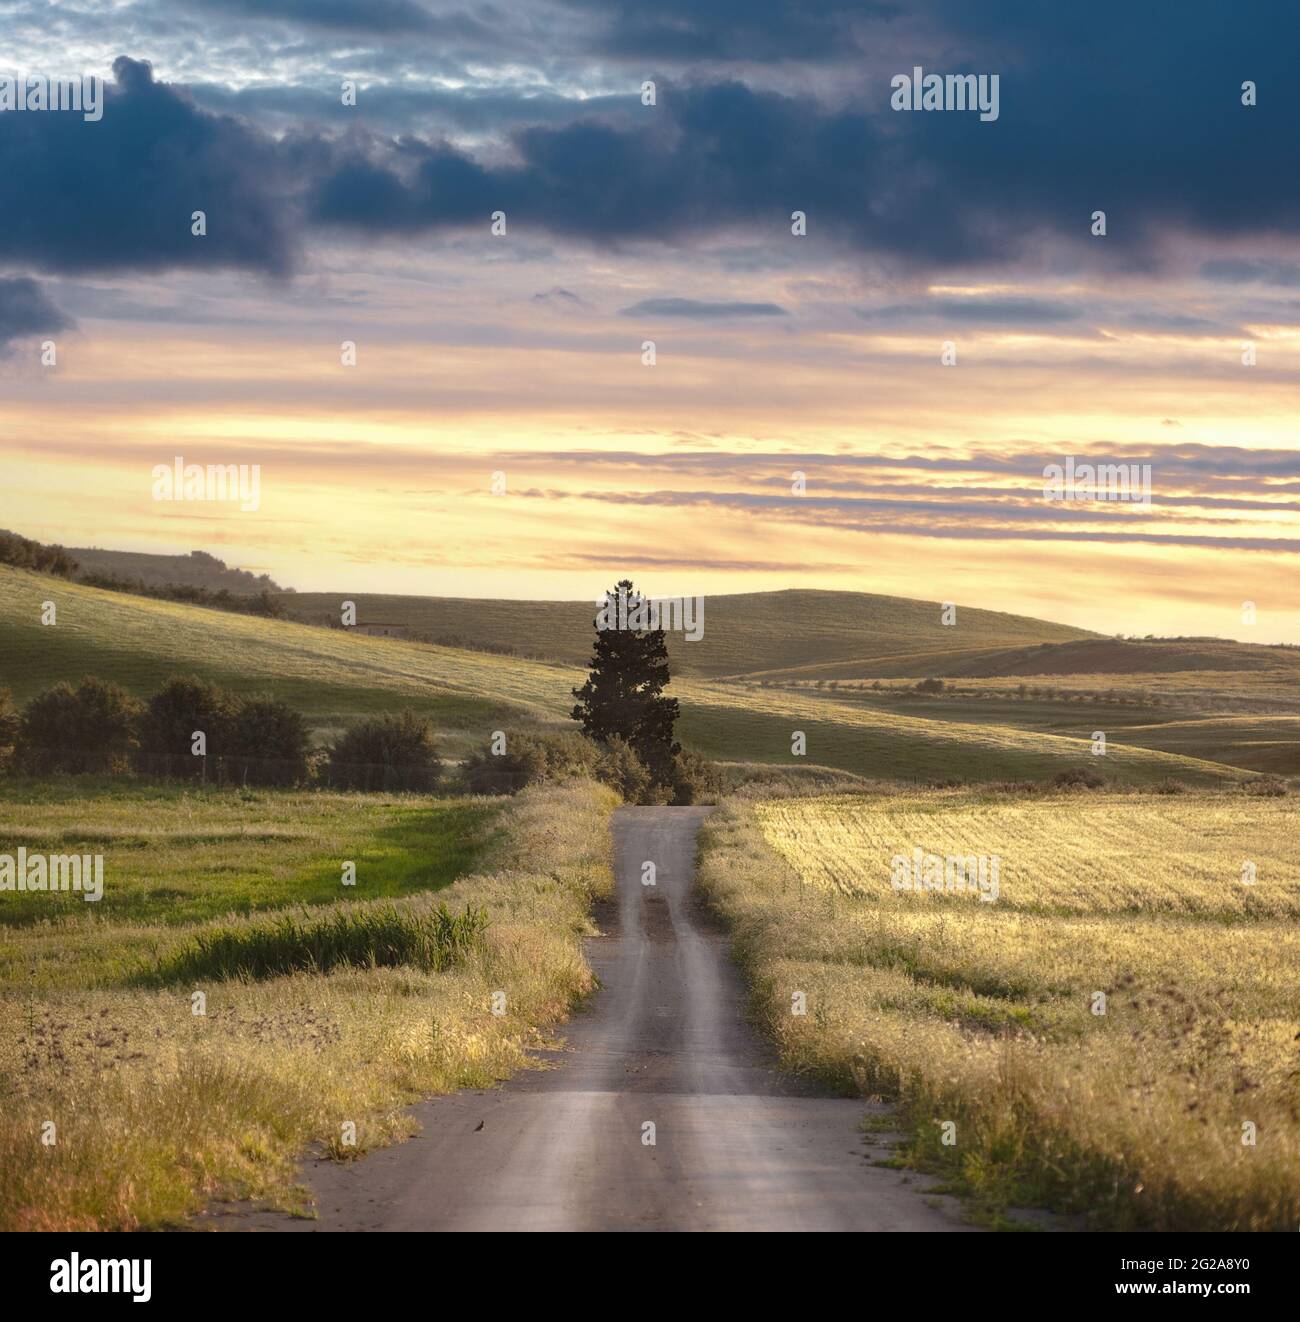 paesaggio rurale con percorso rettilineo attraverso campi con albero solitario all'alba Foto Stock